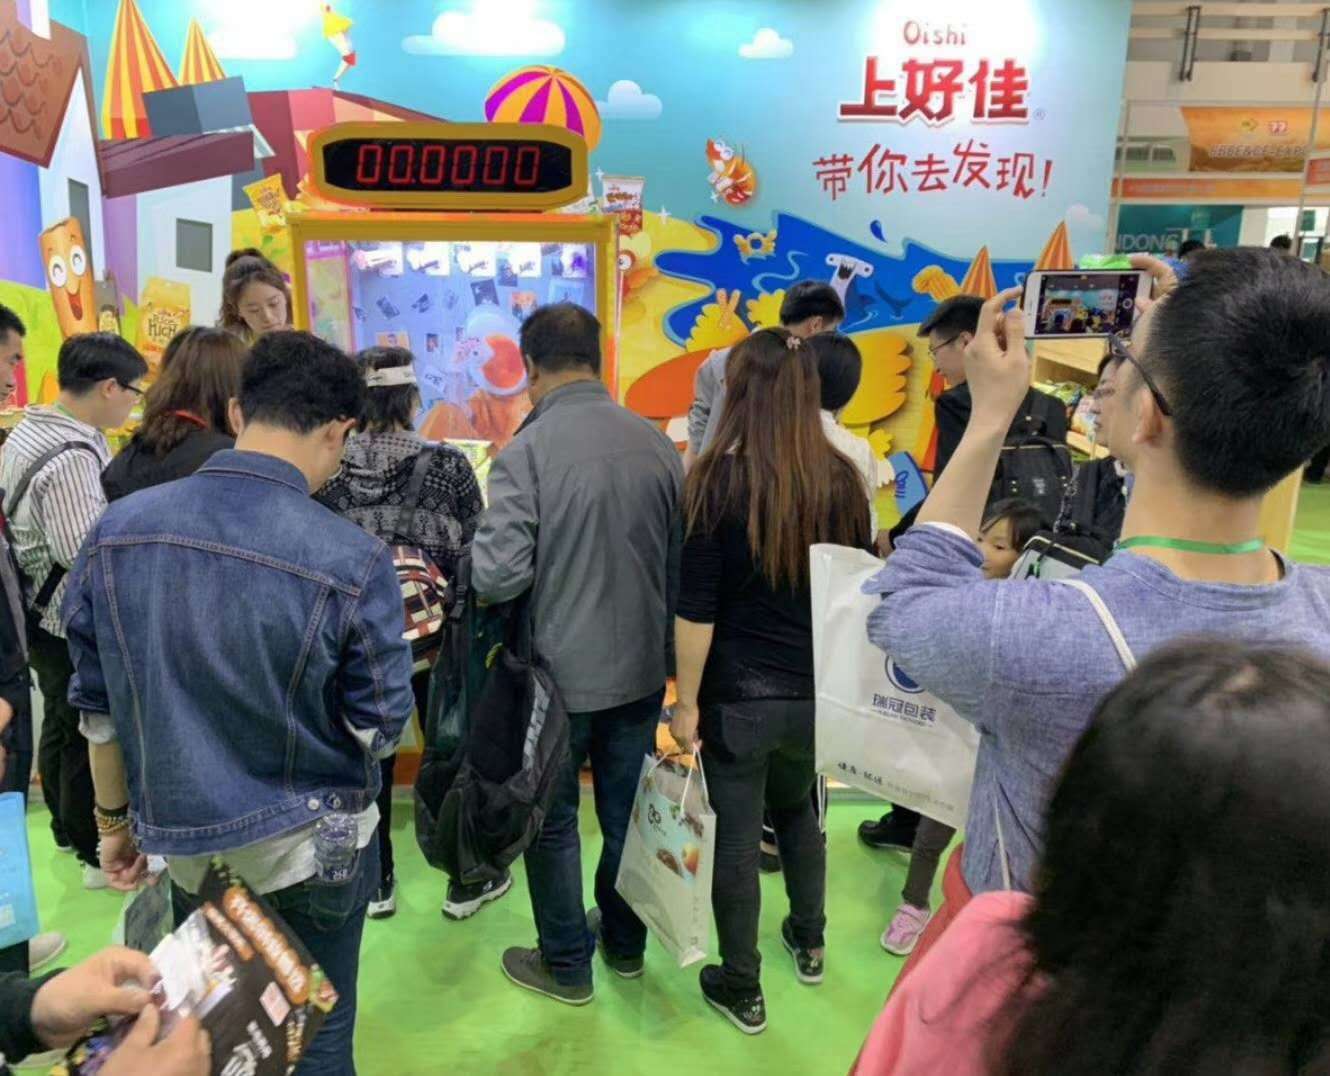 2020北京食品加工与包装展览会